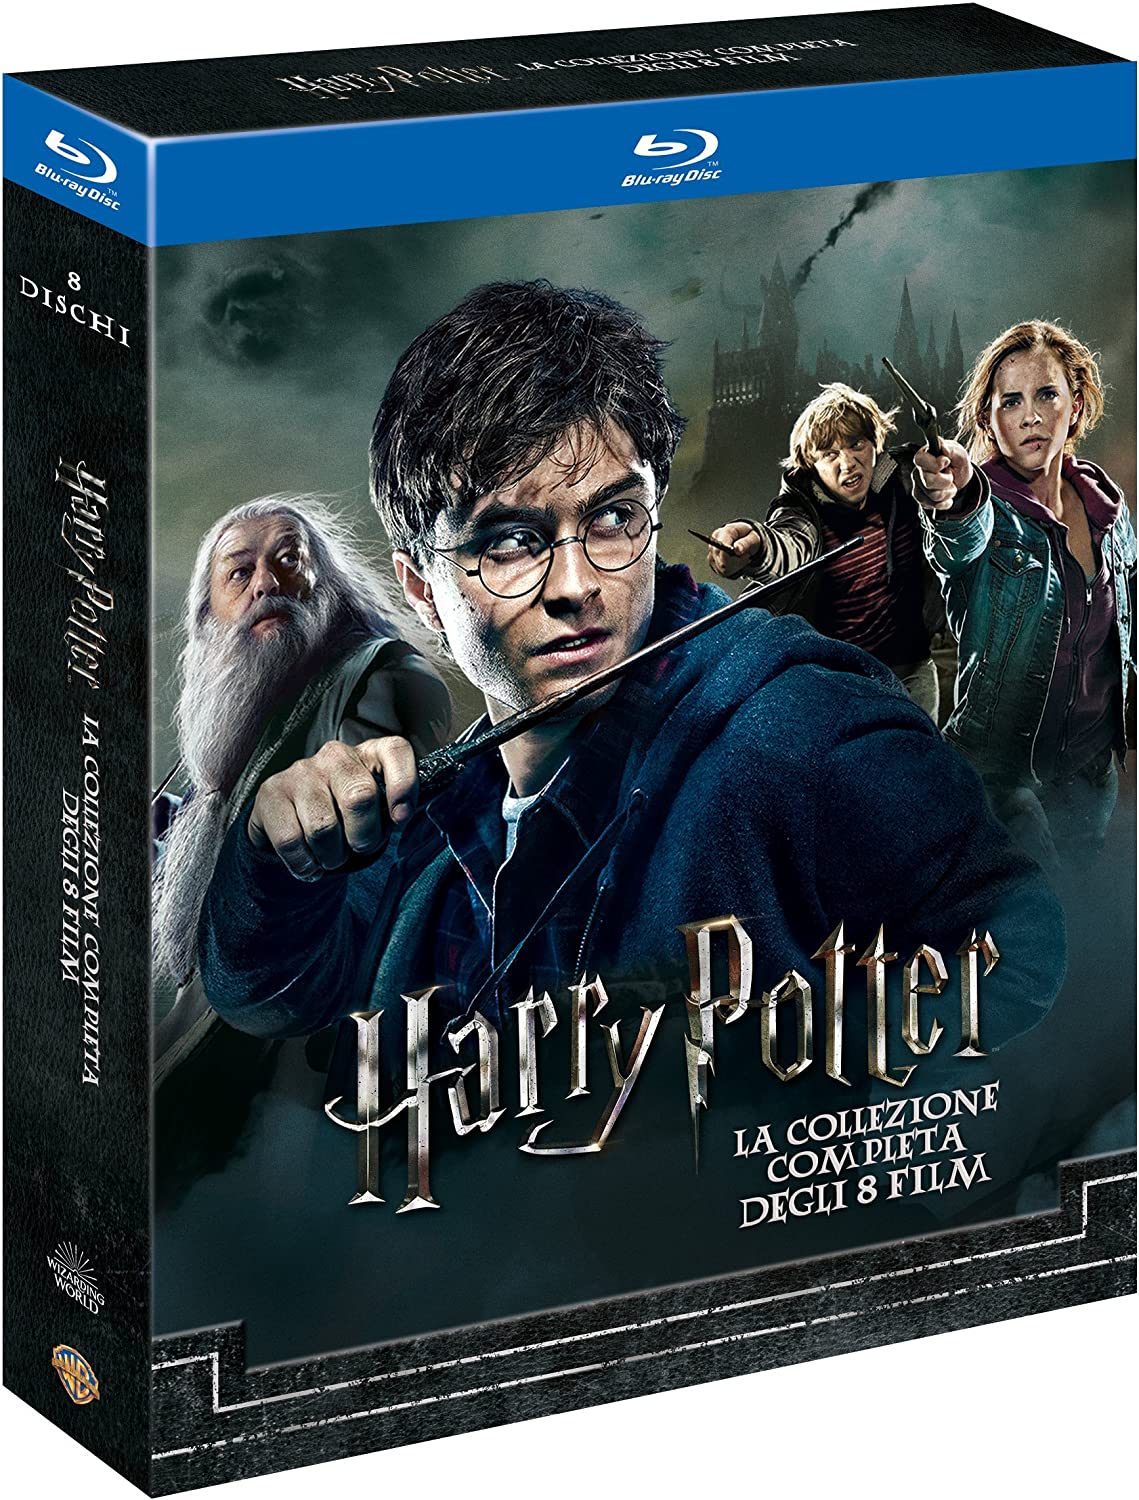 Bild zu Harry Potter Collection [Blu-ray] für 18,88€ (Vergleich: 29,99€)